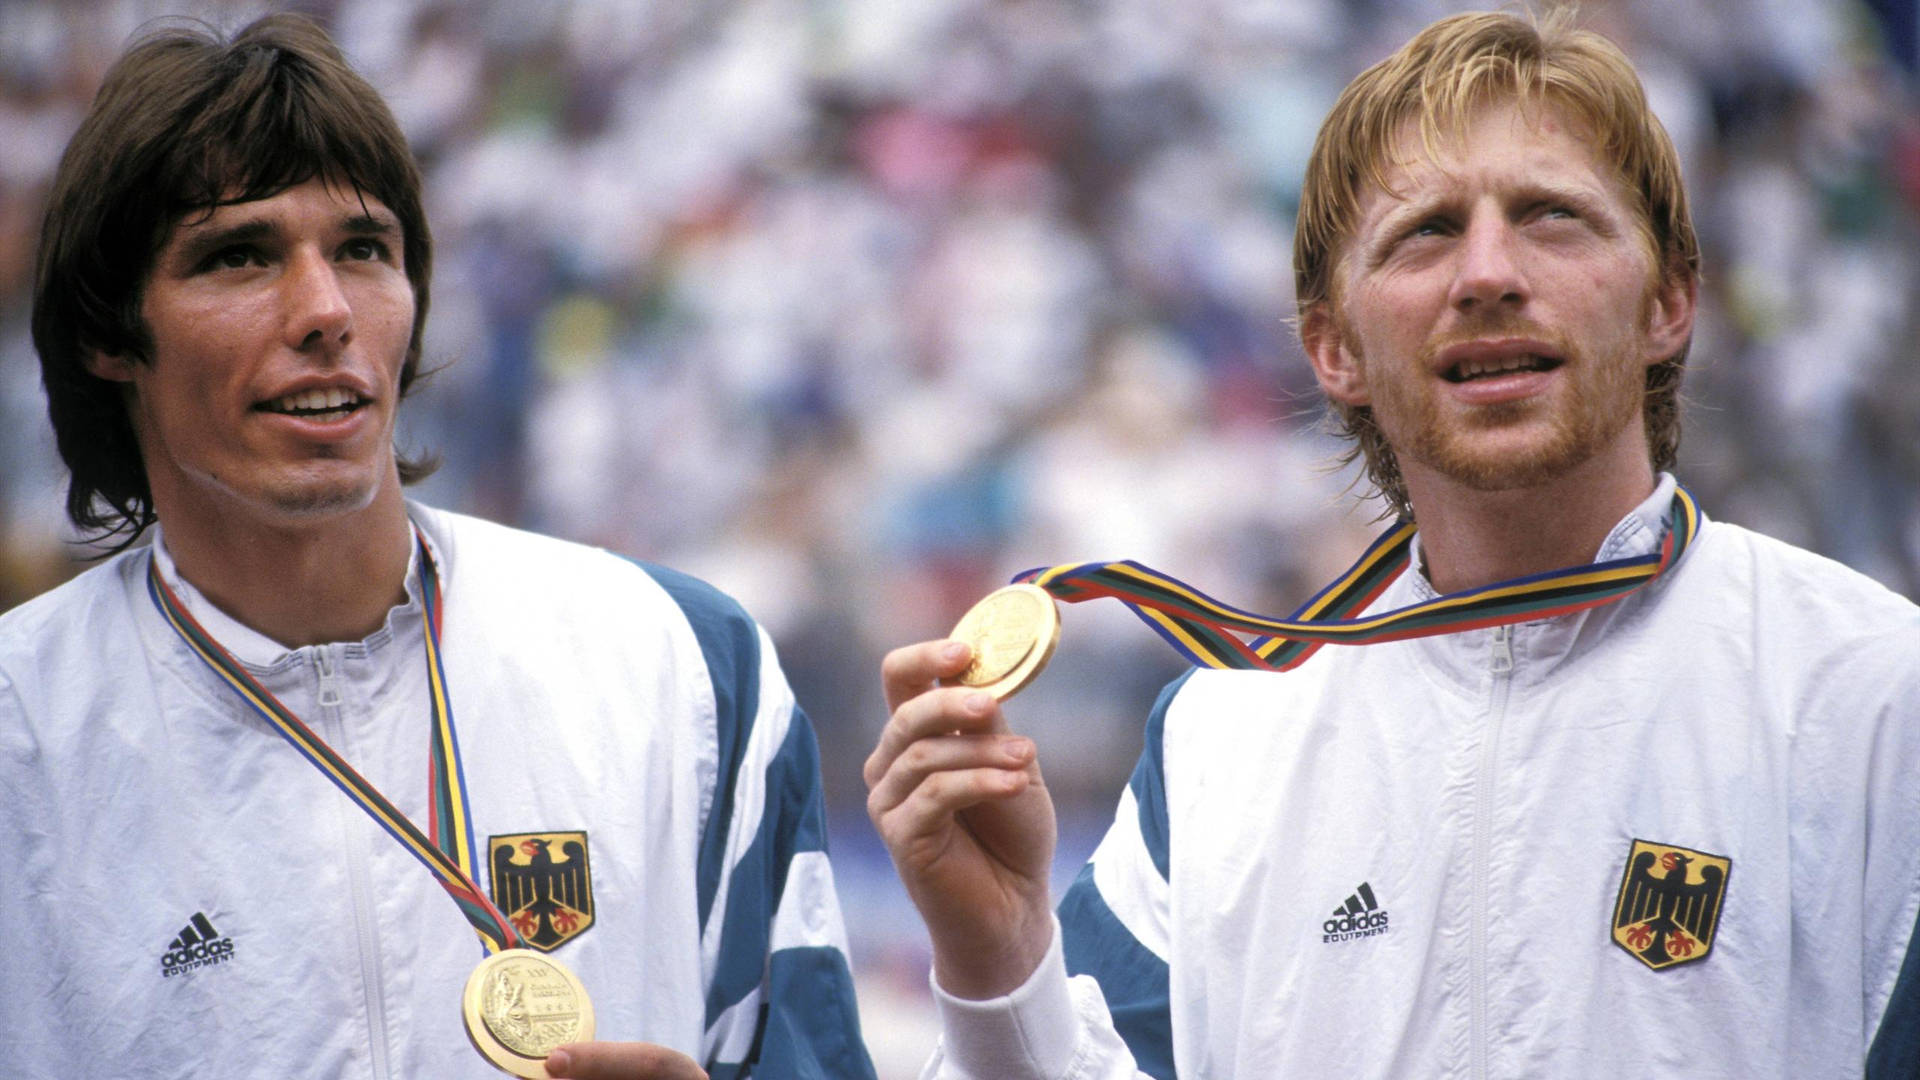 Michael Stich Boris Becker Wearing Medals Wallpaper